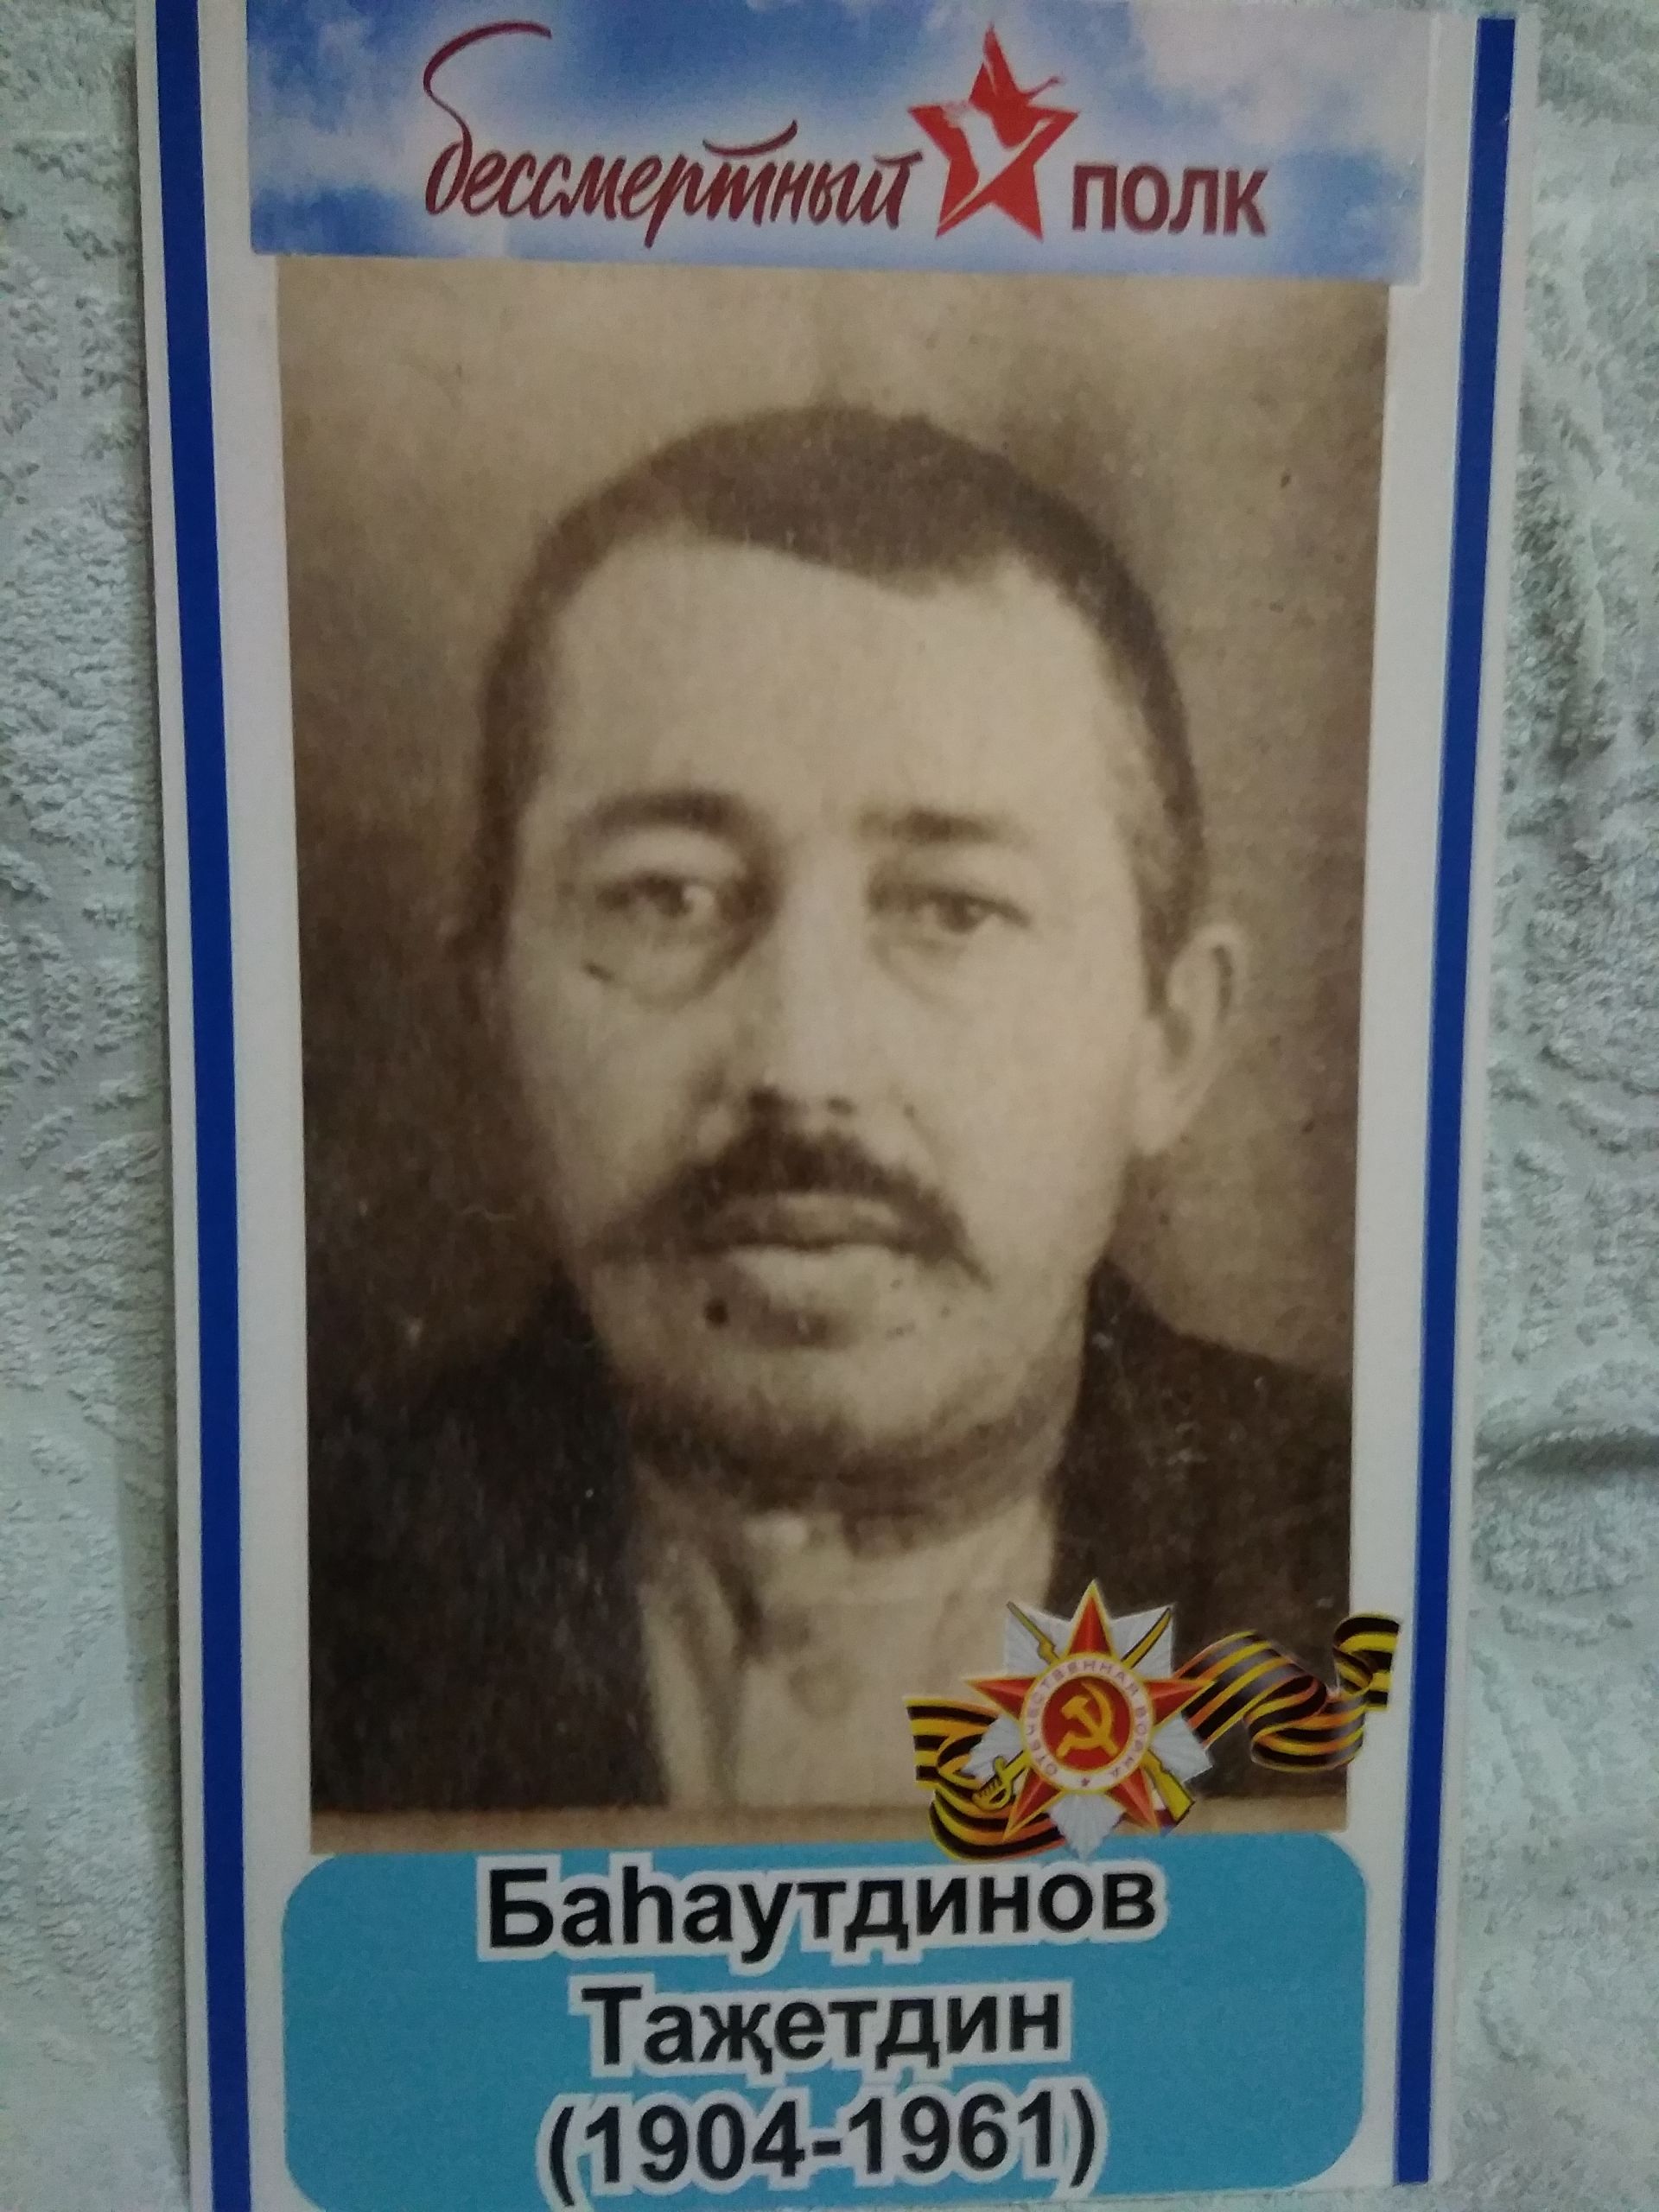 Багаутдинов Тази (Тазутдин) Багаутдинович